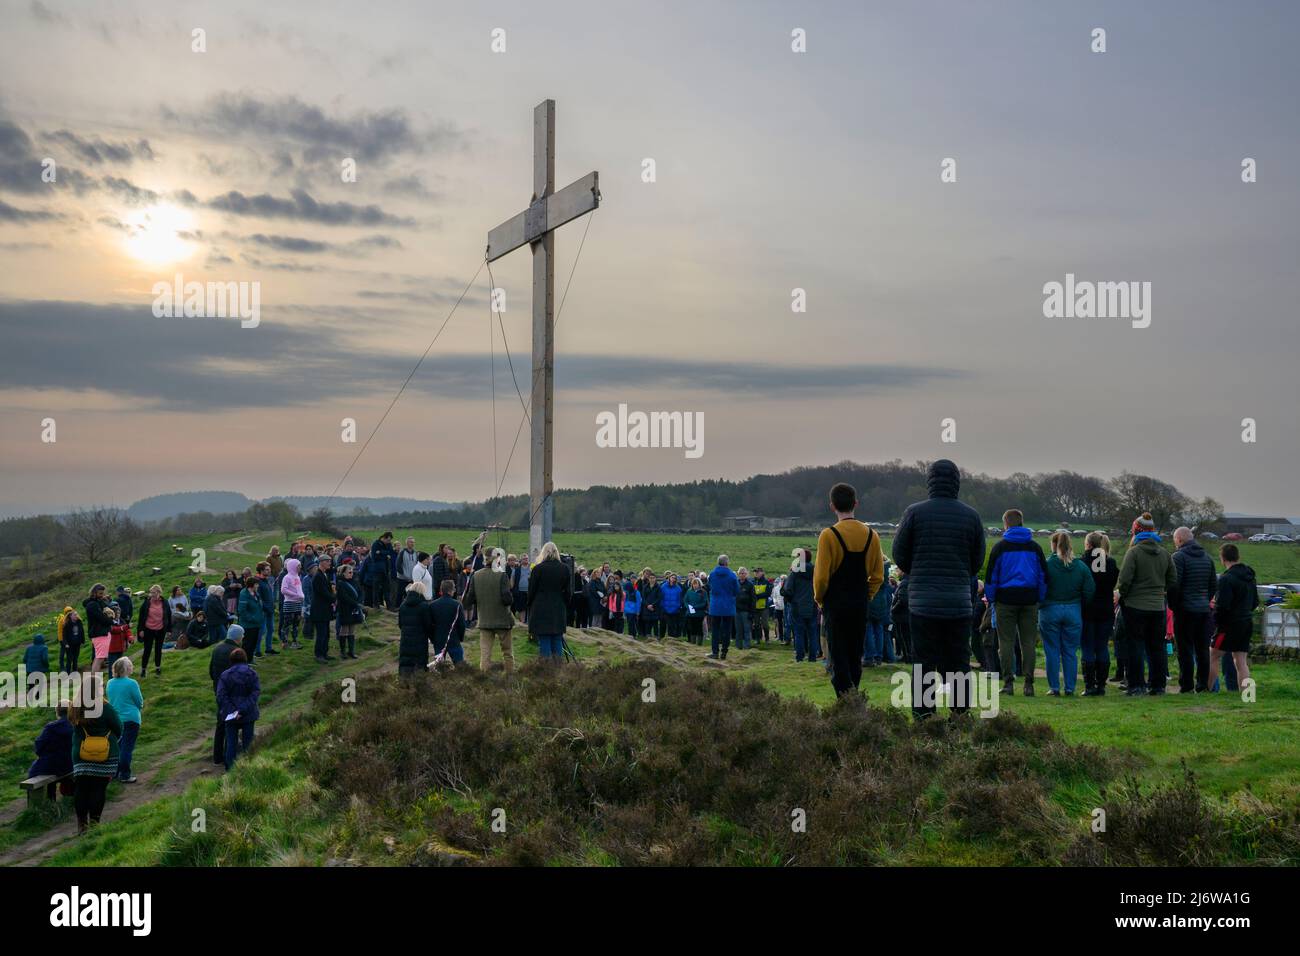 La folla della Congregazione si è riunita in cima alla collina per il tradizionale servizio dell'alba della Domenica di Pasqua da un'alta croce di legno - il Chevin, Otley, West Yorkshire Inghilterra UK. Foto Stock